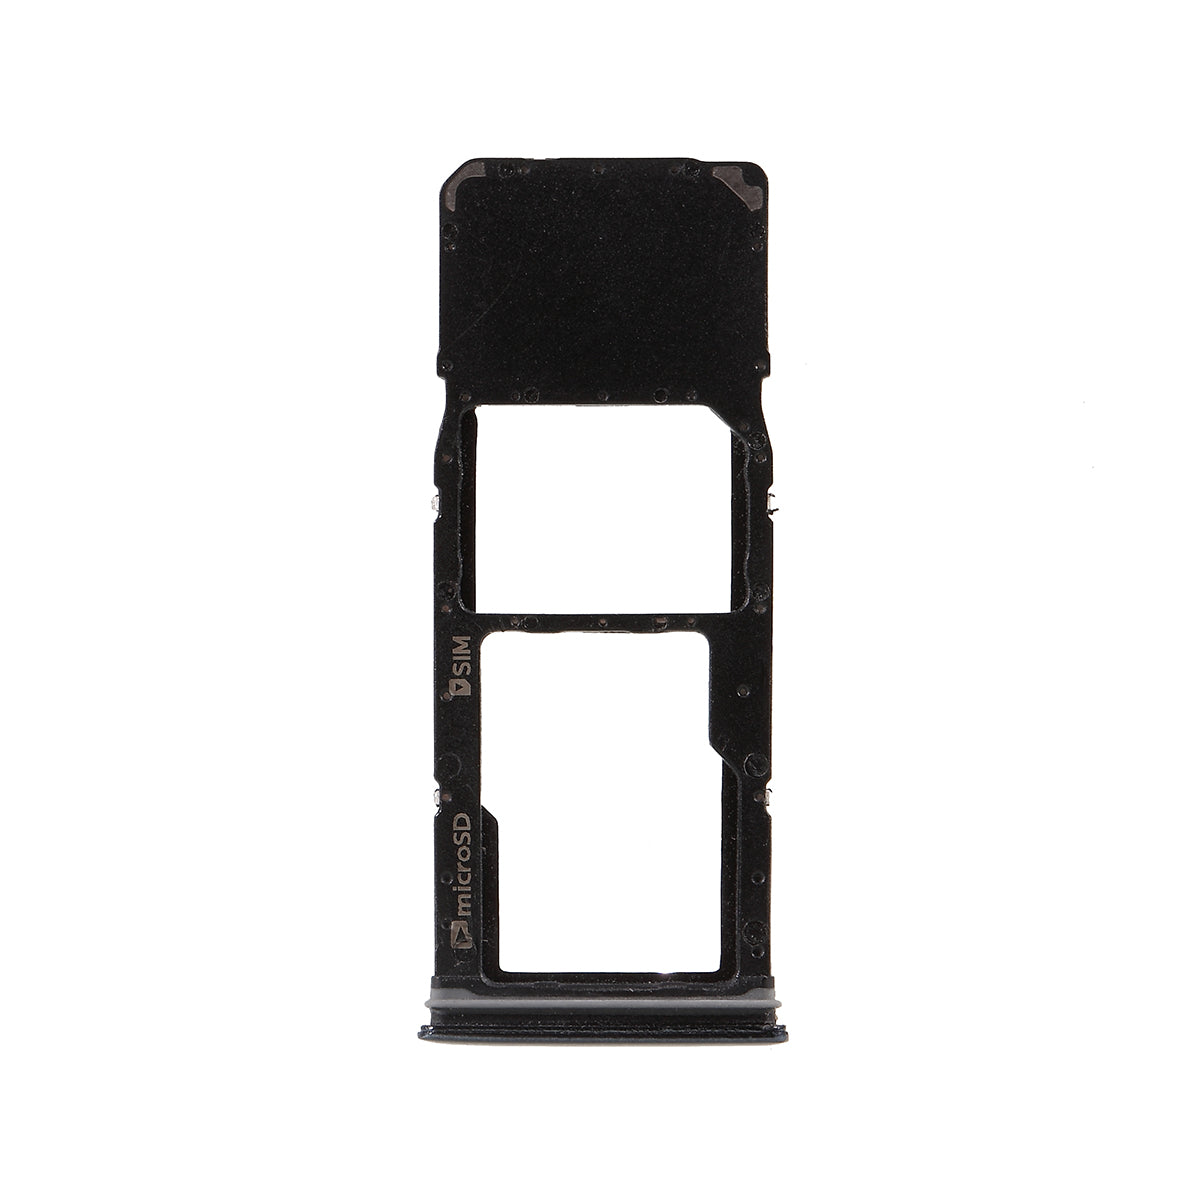 OEM Single SIM Card Tray Holder Slot for Samsung Galaxy A9 (2018) A920 - Black